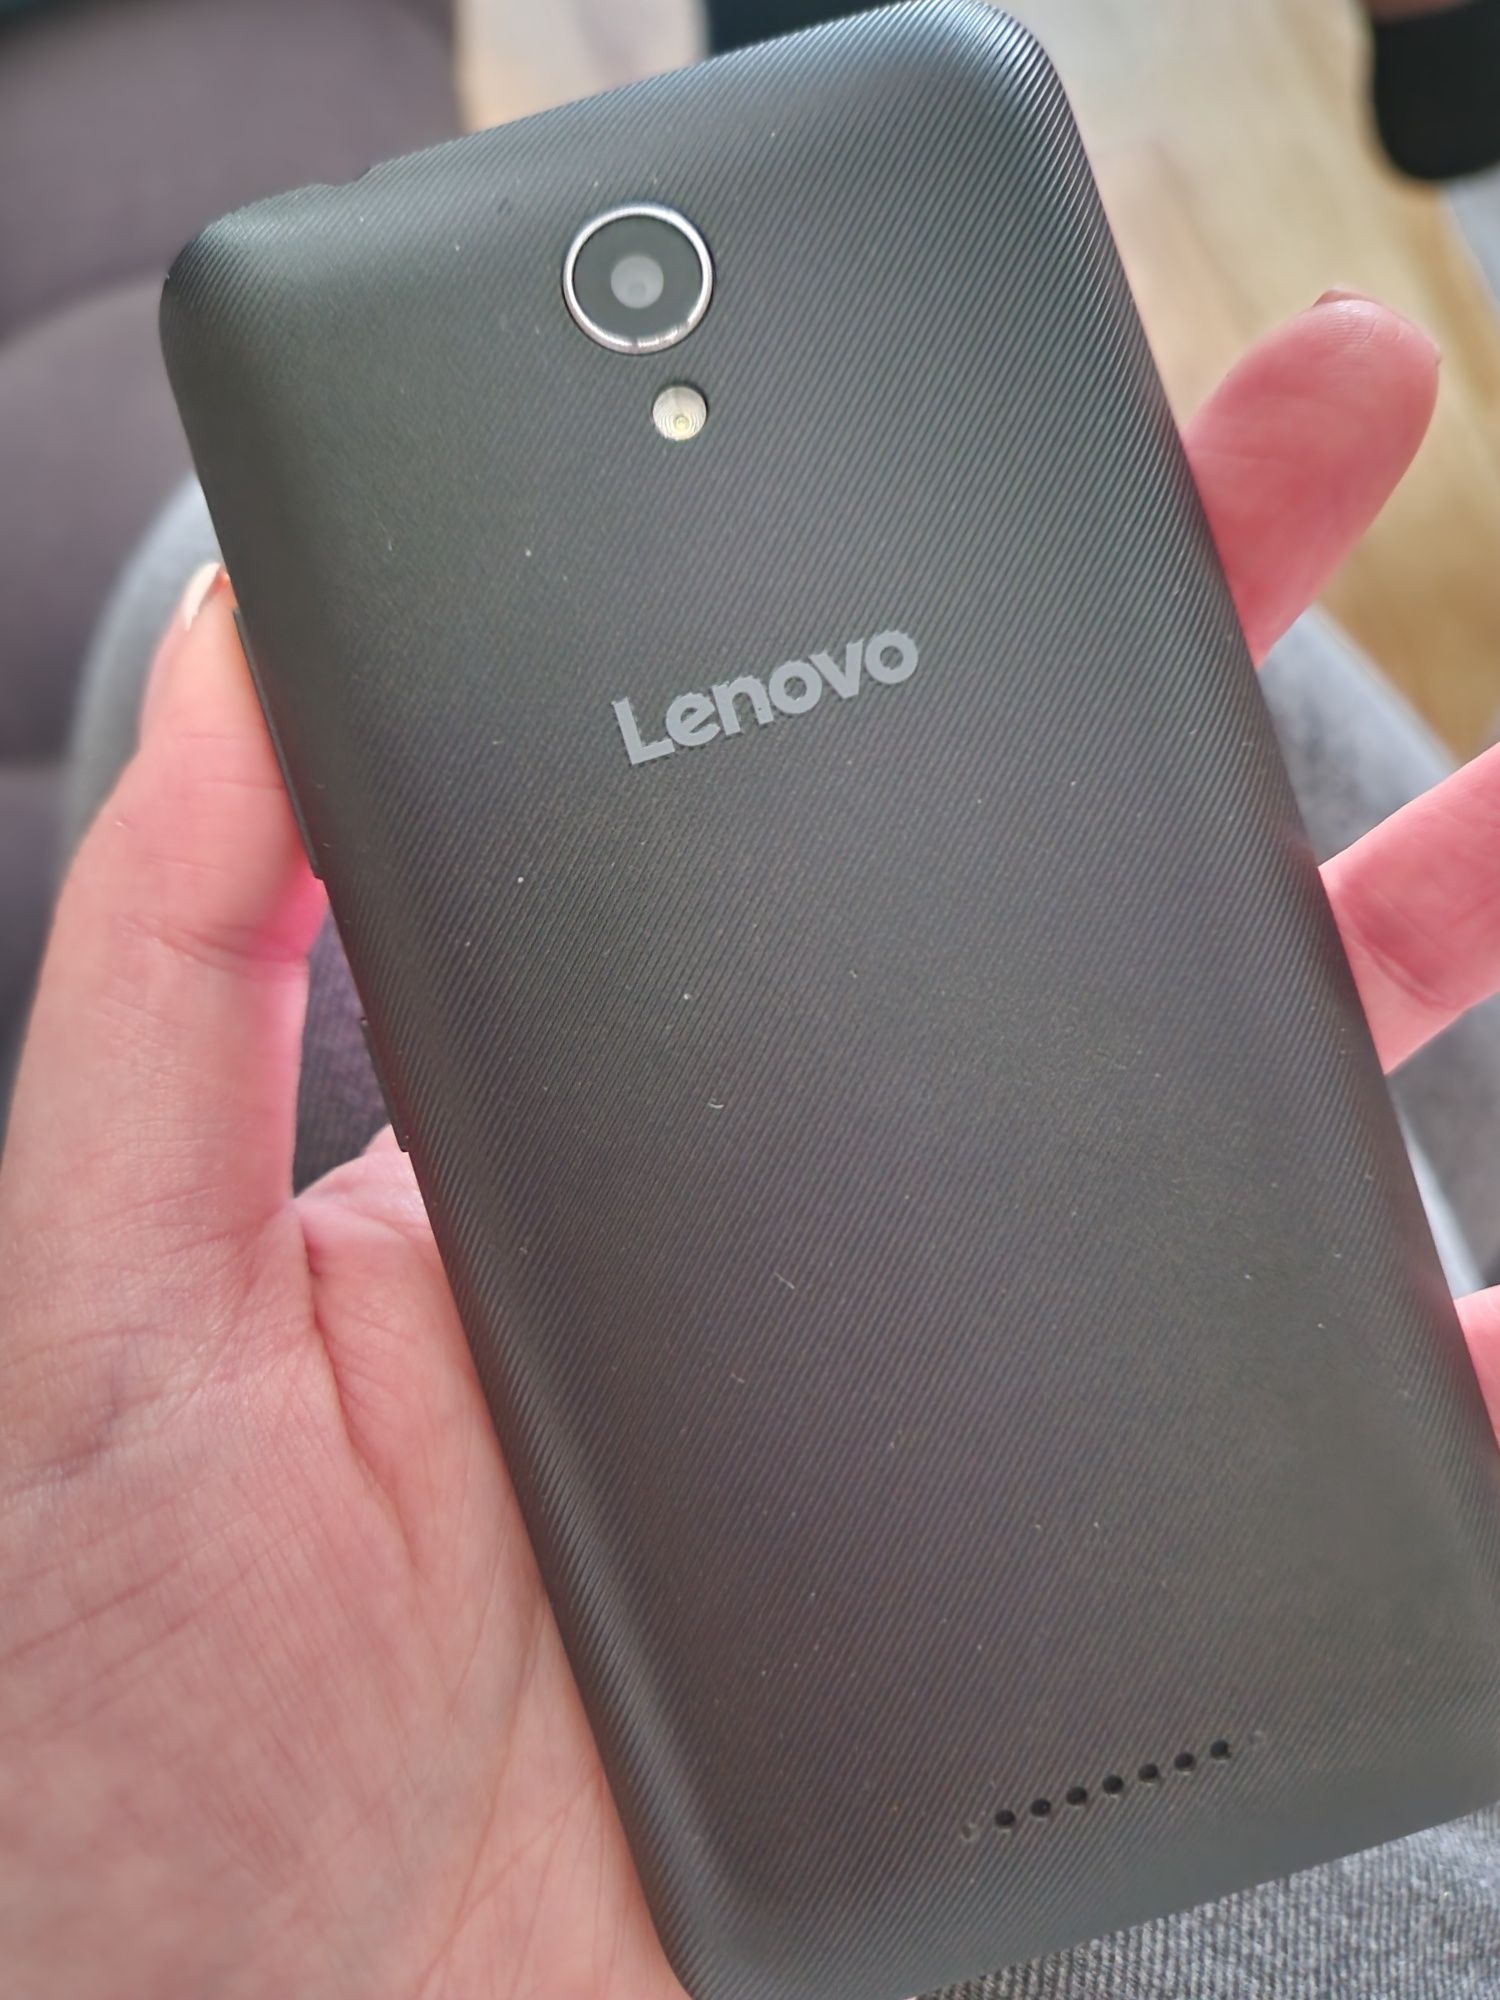 Lenovo smartfon bdb